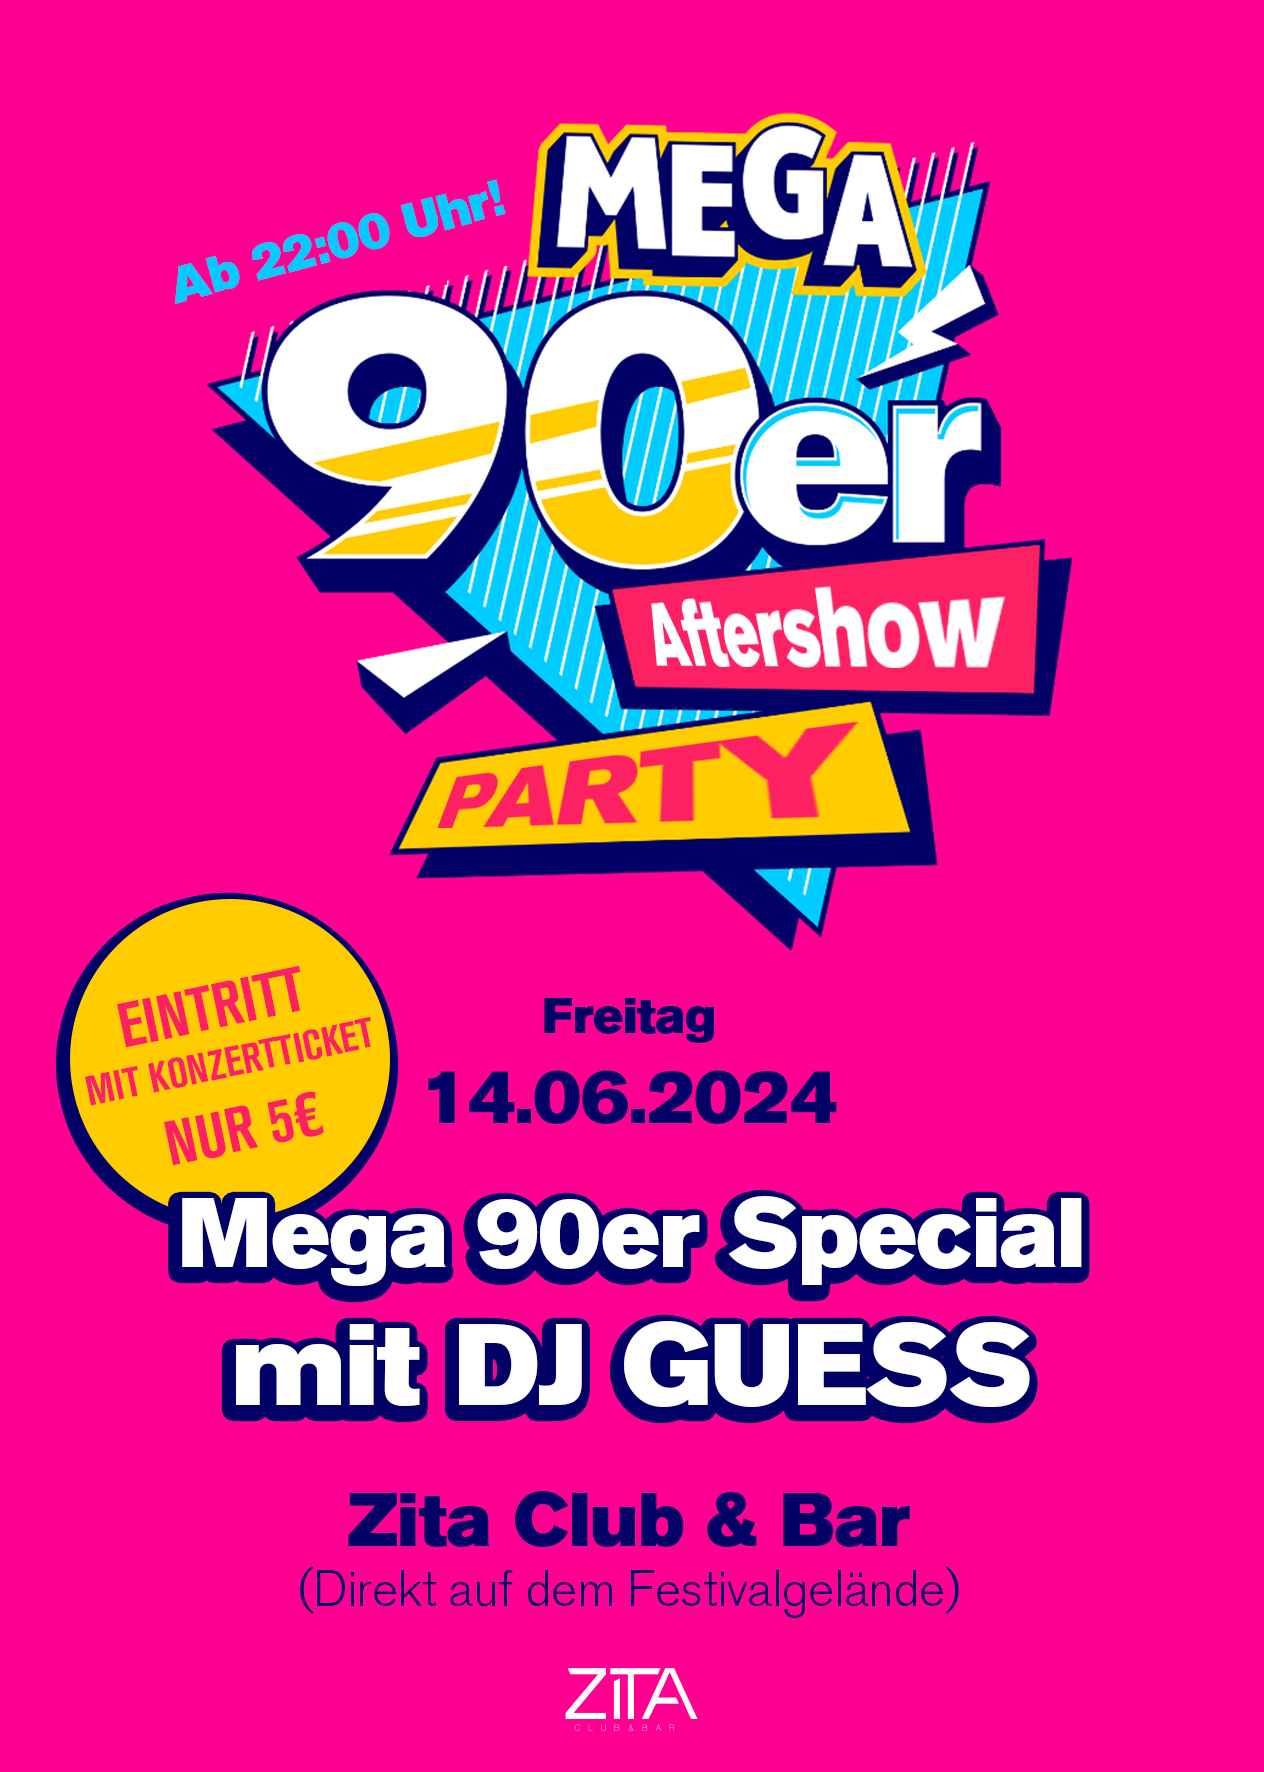 Die Ultimative 90iger Party / Mega 90iger Special